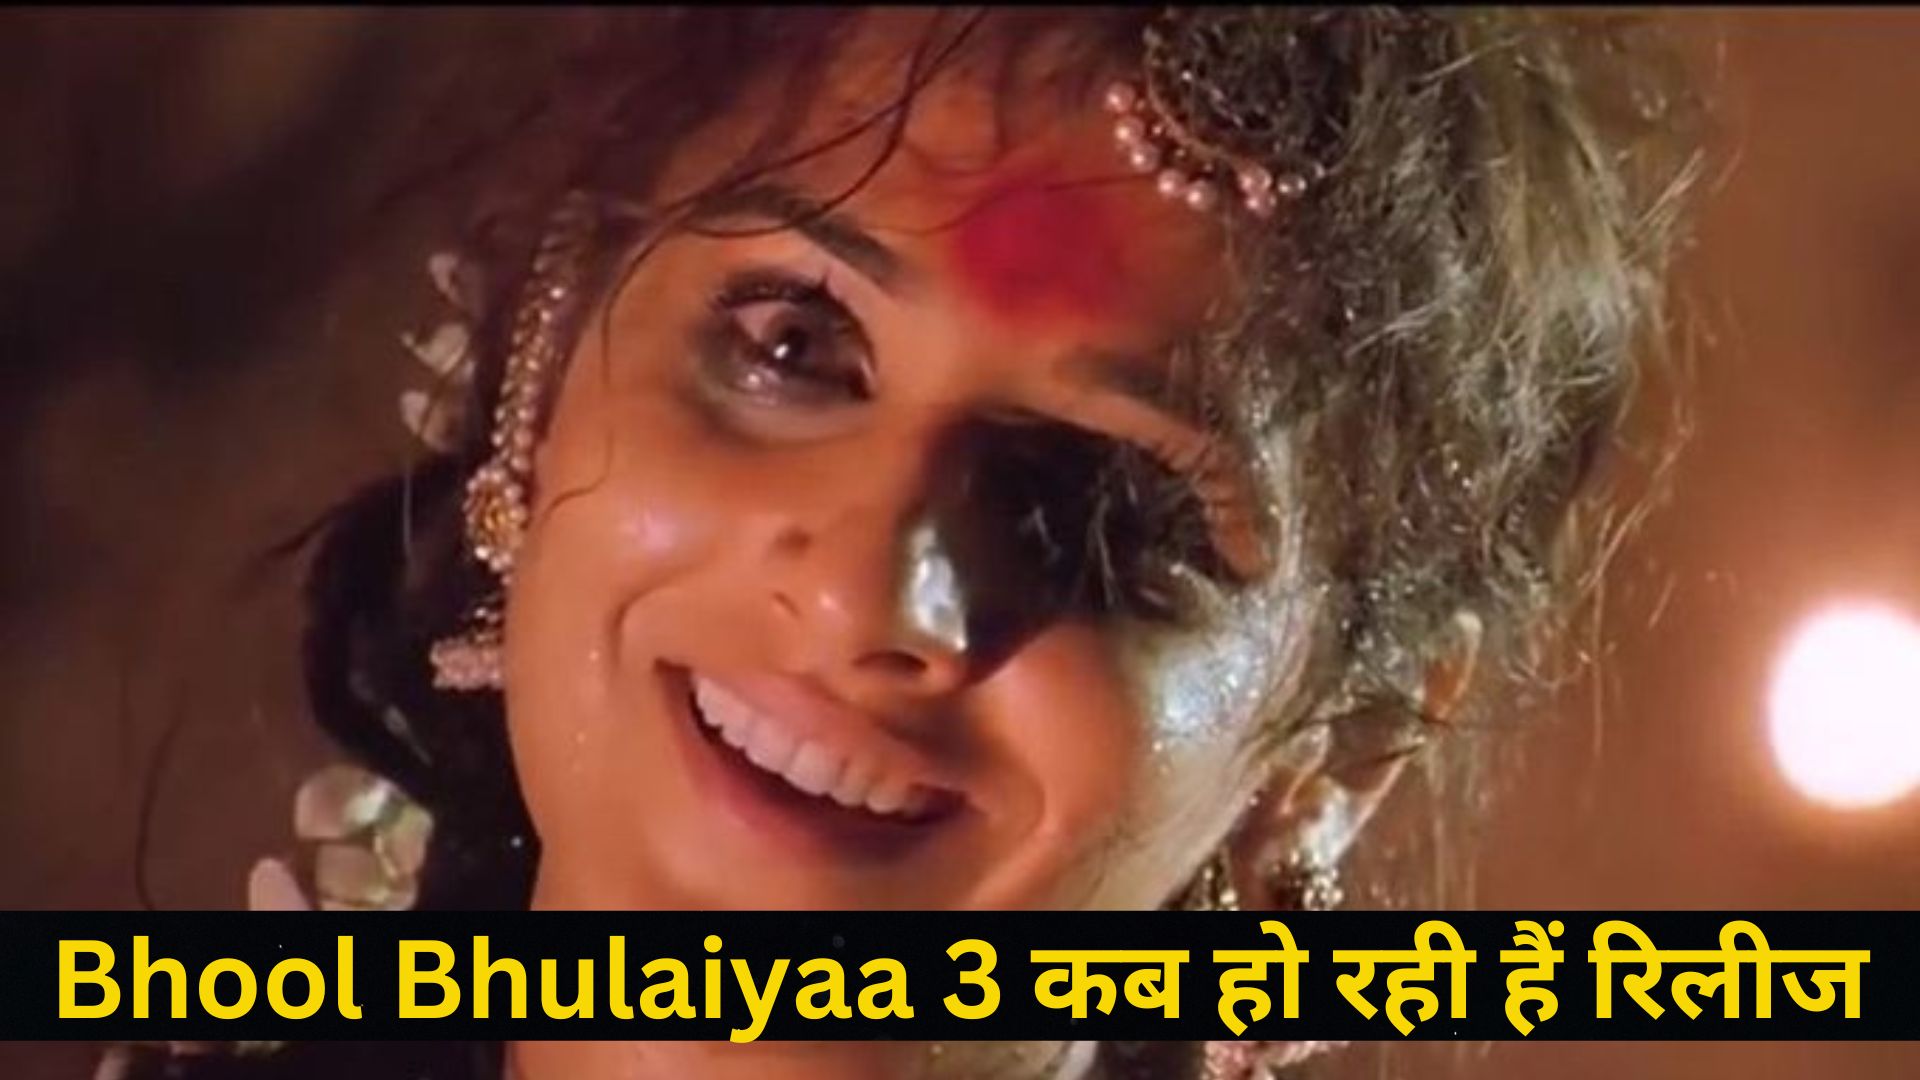 "Bhool Bhulaiyaa 3 "